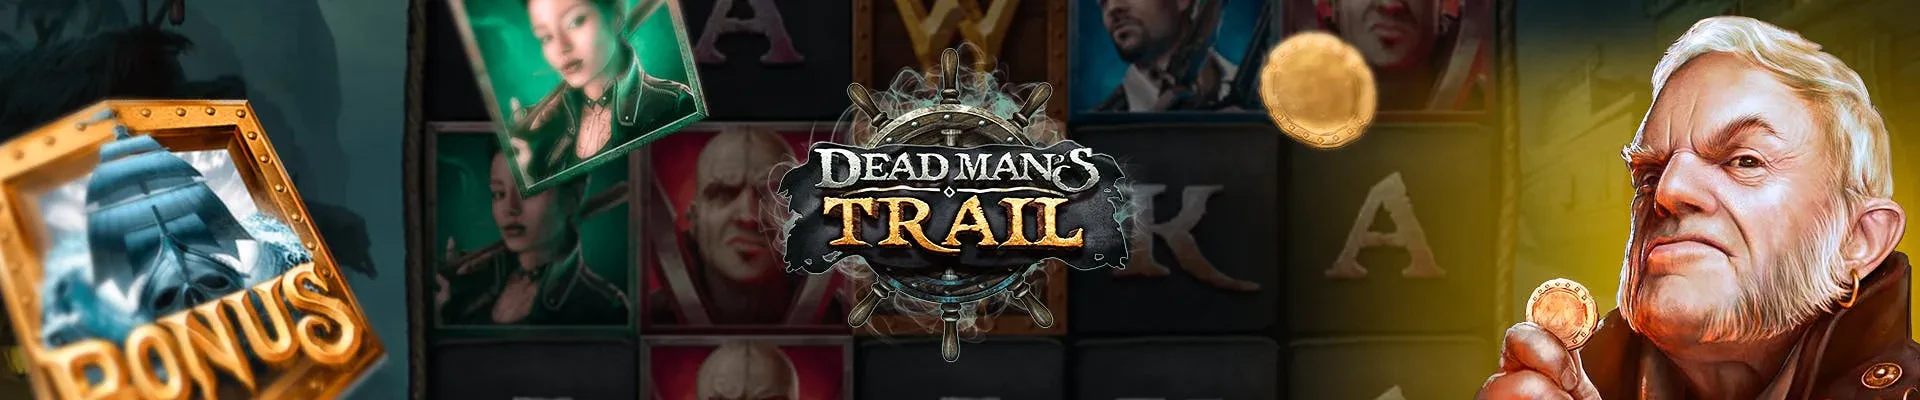 header dead man's trail